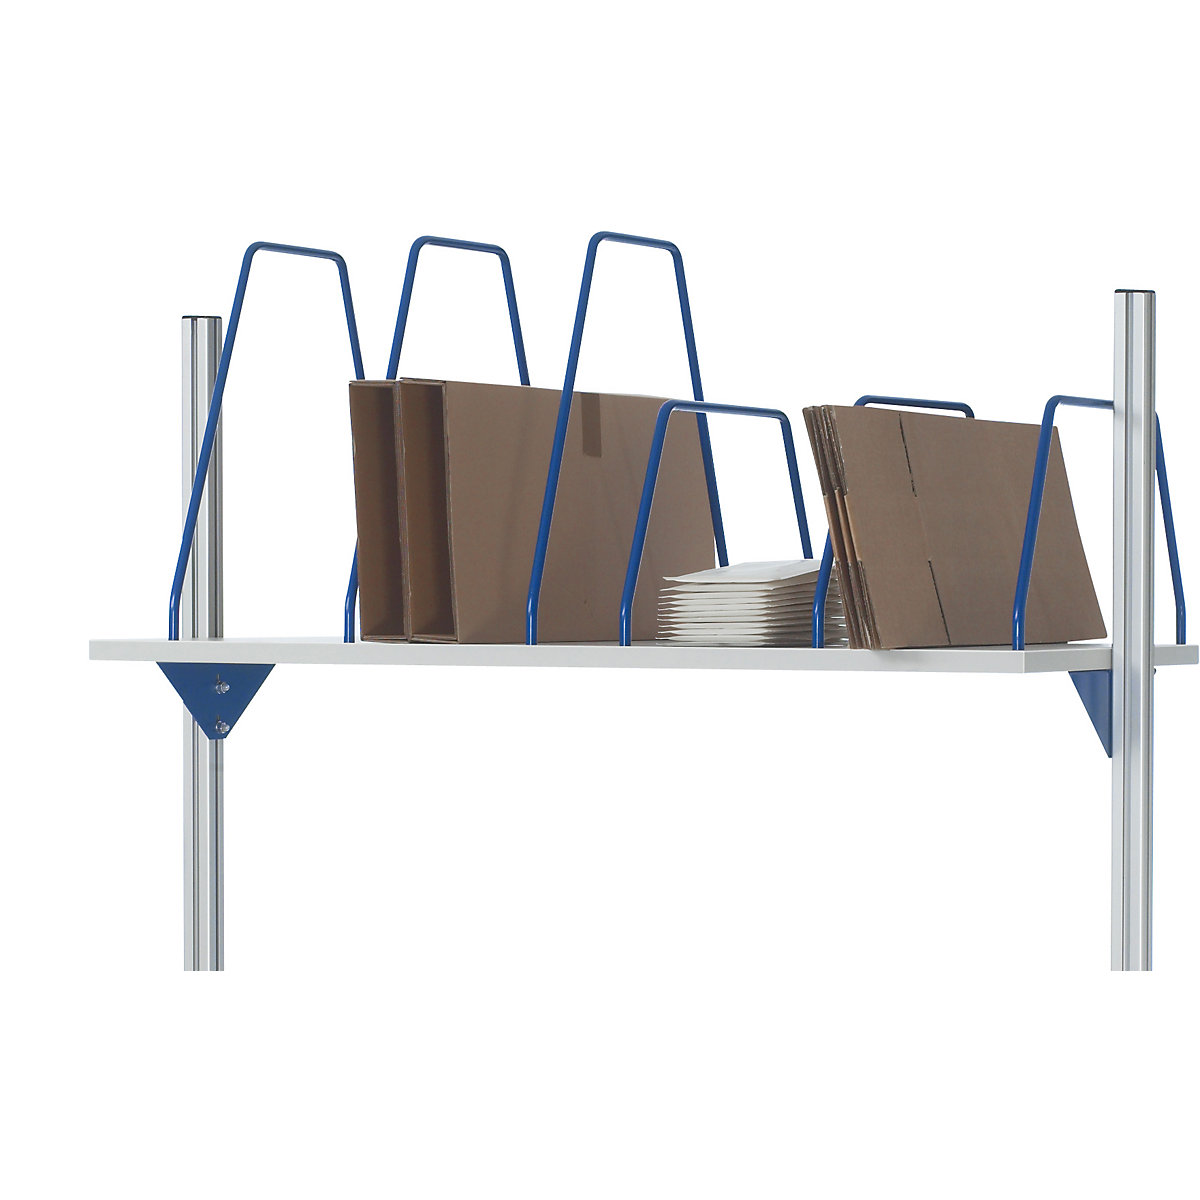 Porte-cartons – RAU, pour superstructures modulaires des postes de travail et des établis, pour largeur de rayonnage 1250 mm-1